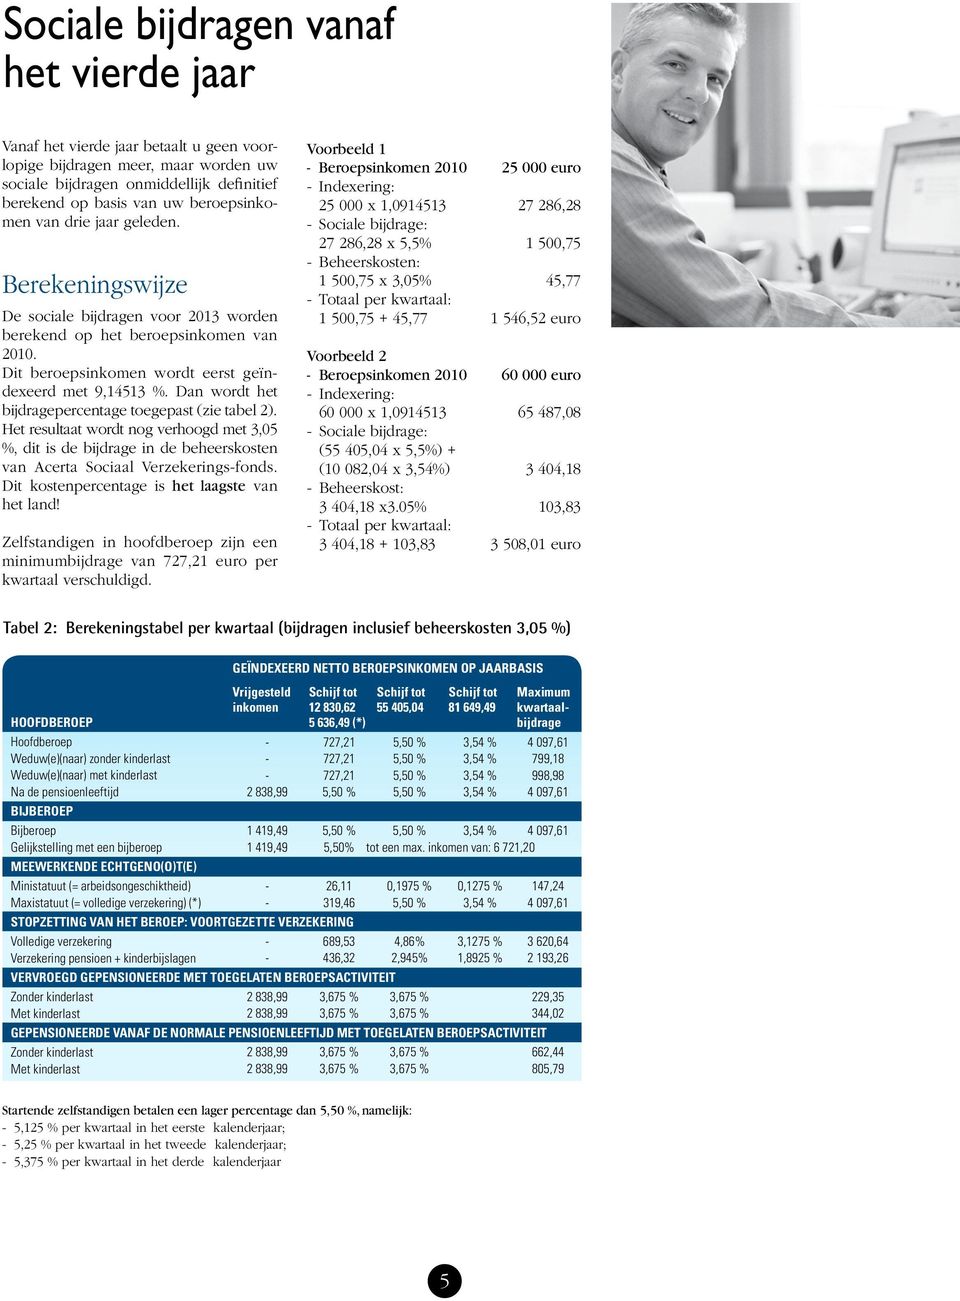 Dan wordt het bijdragepercentage toegepast (zie tabel 2). Het resultaat wordt nog verhoogd met 3,05 %, dit is de bijdrage in de beheerskosten van Acerta Sociaal Verzekerings-fonds.